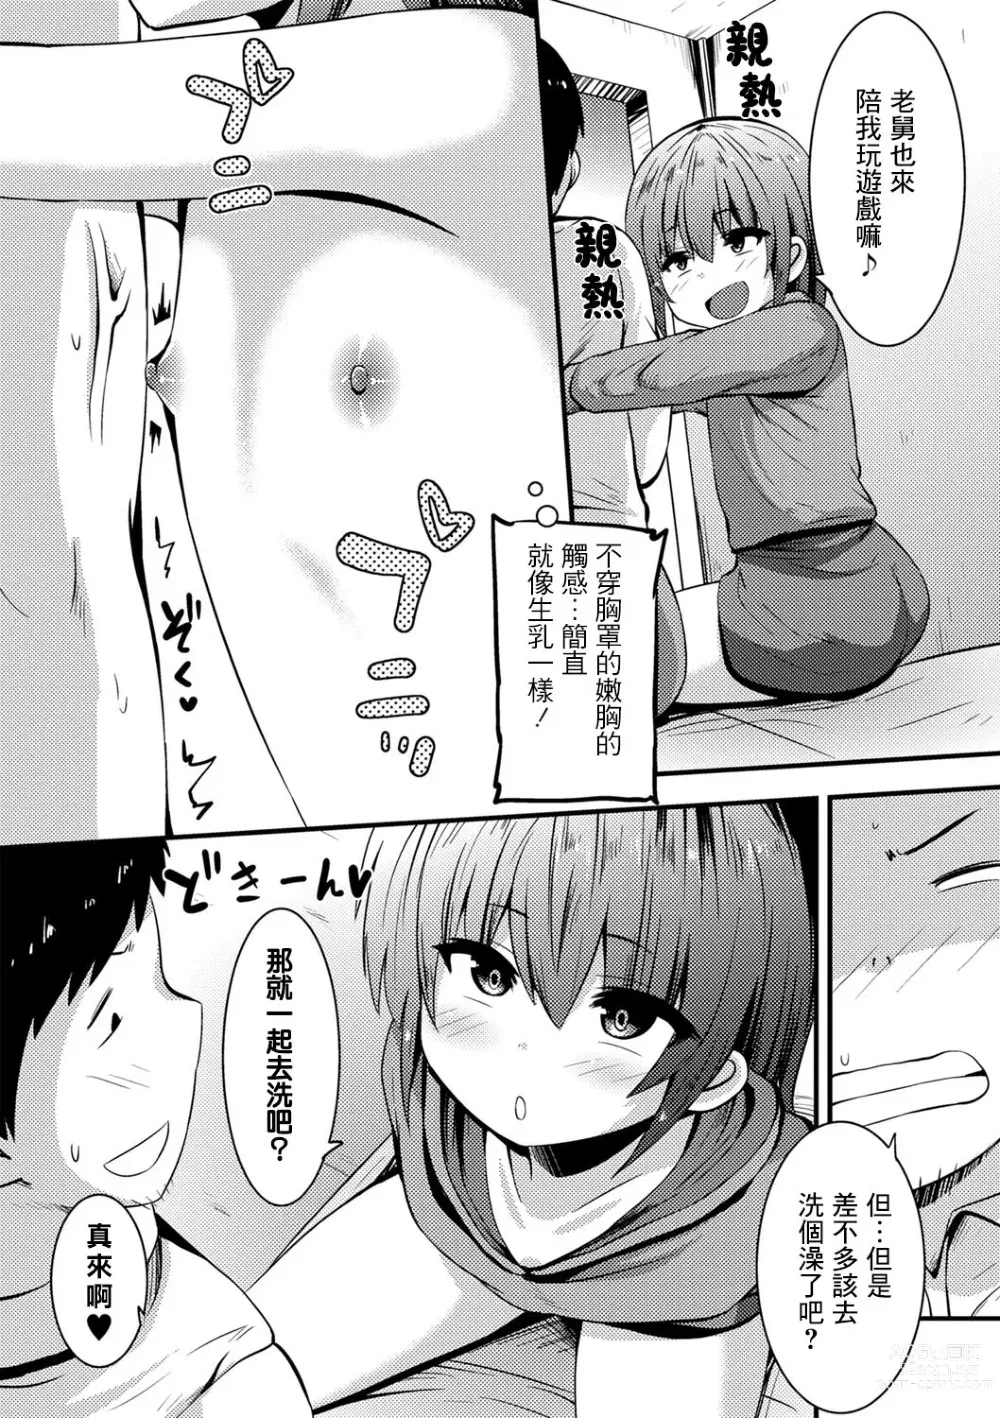 Page 4 of manga Azukari Meikko Time